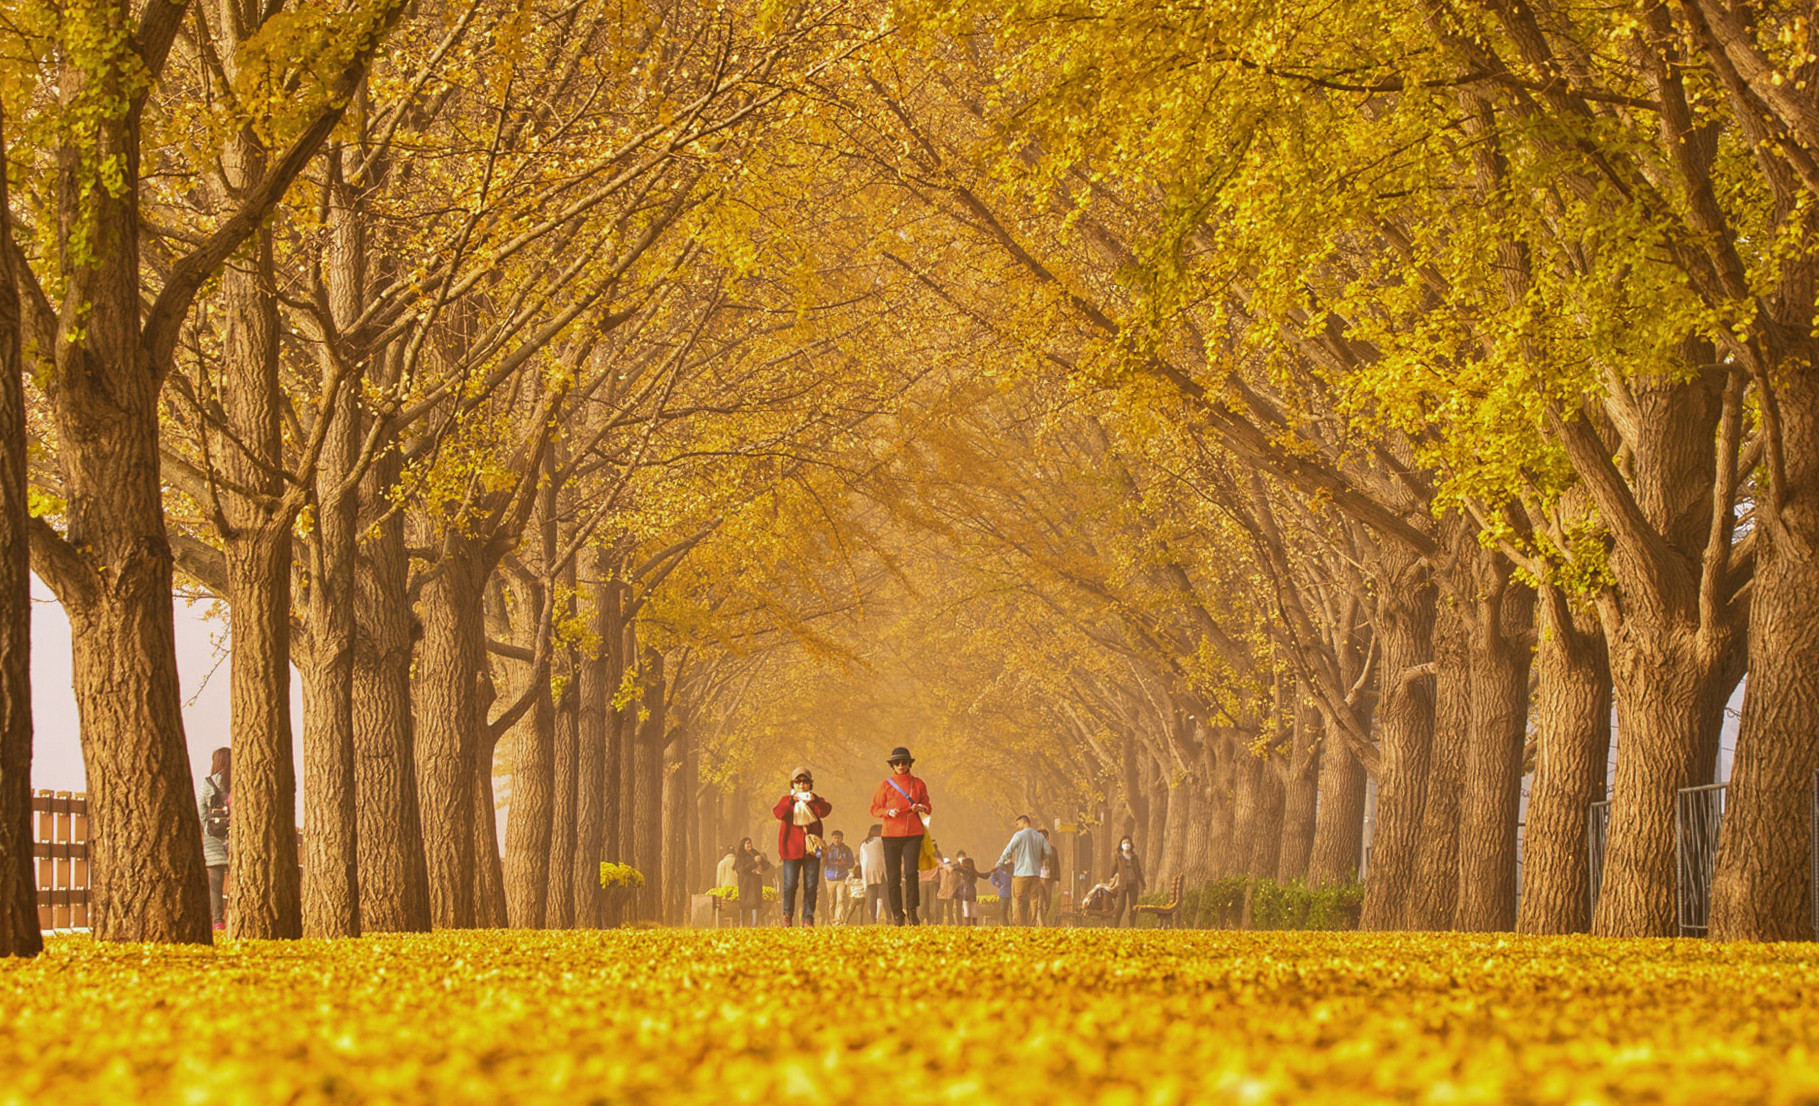 Mùa thu Hàn Quốc vàng đẹp như những thước phim